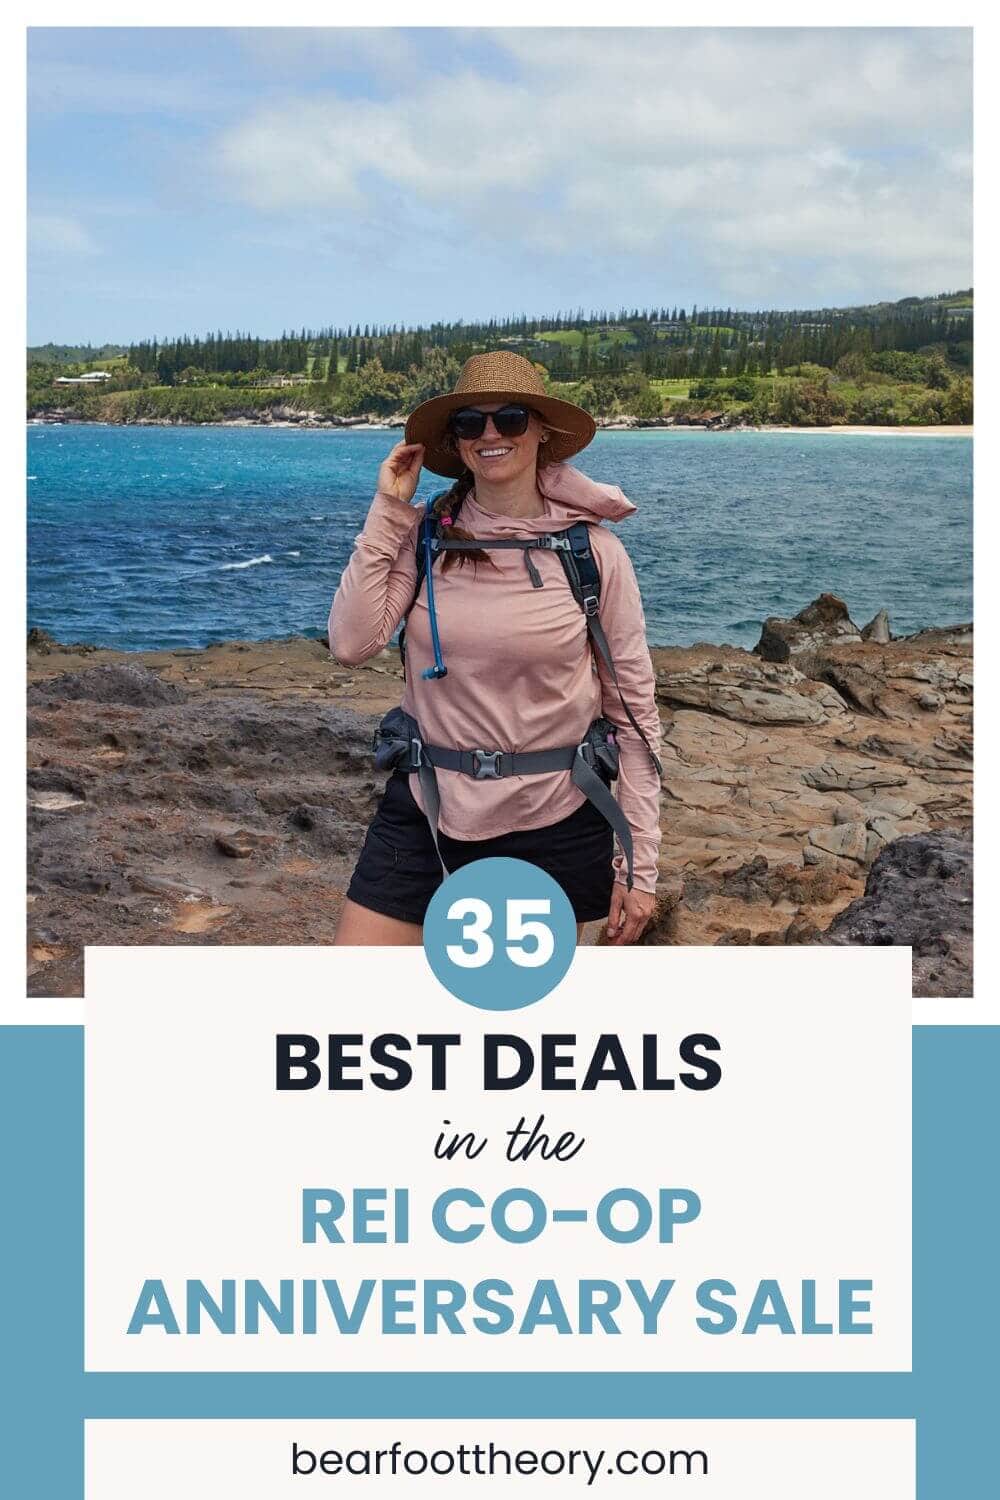 在REI合作周年销售期间探索最好的交易，包括我们最喜欢的徒步旅行，汽车露营，面包车生活，和背包装备和服装。